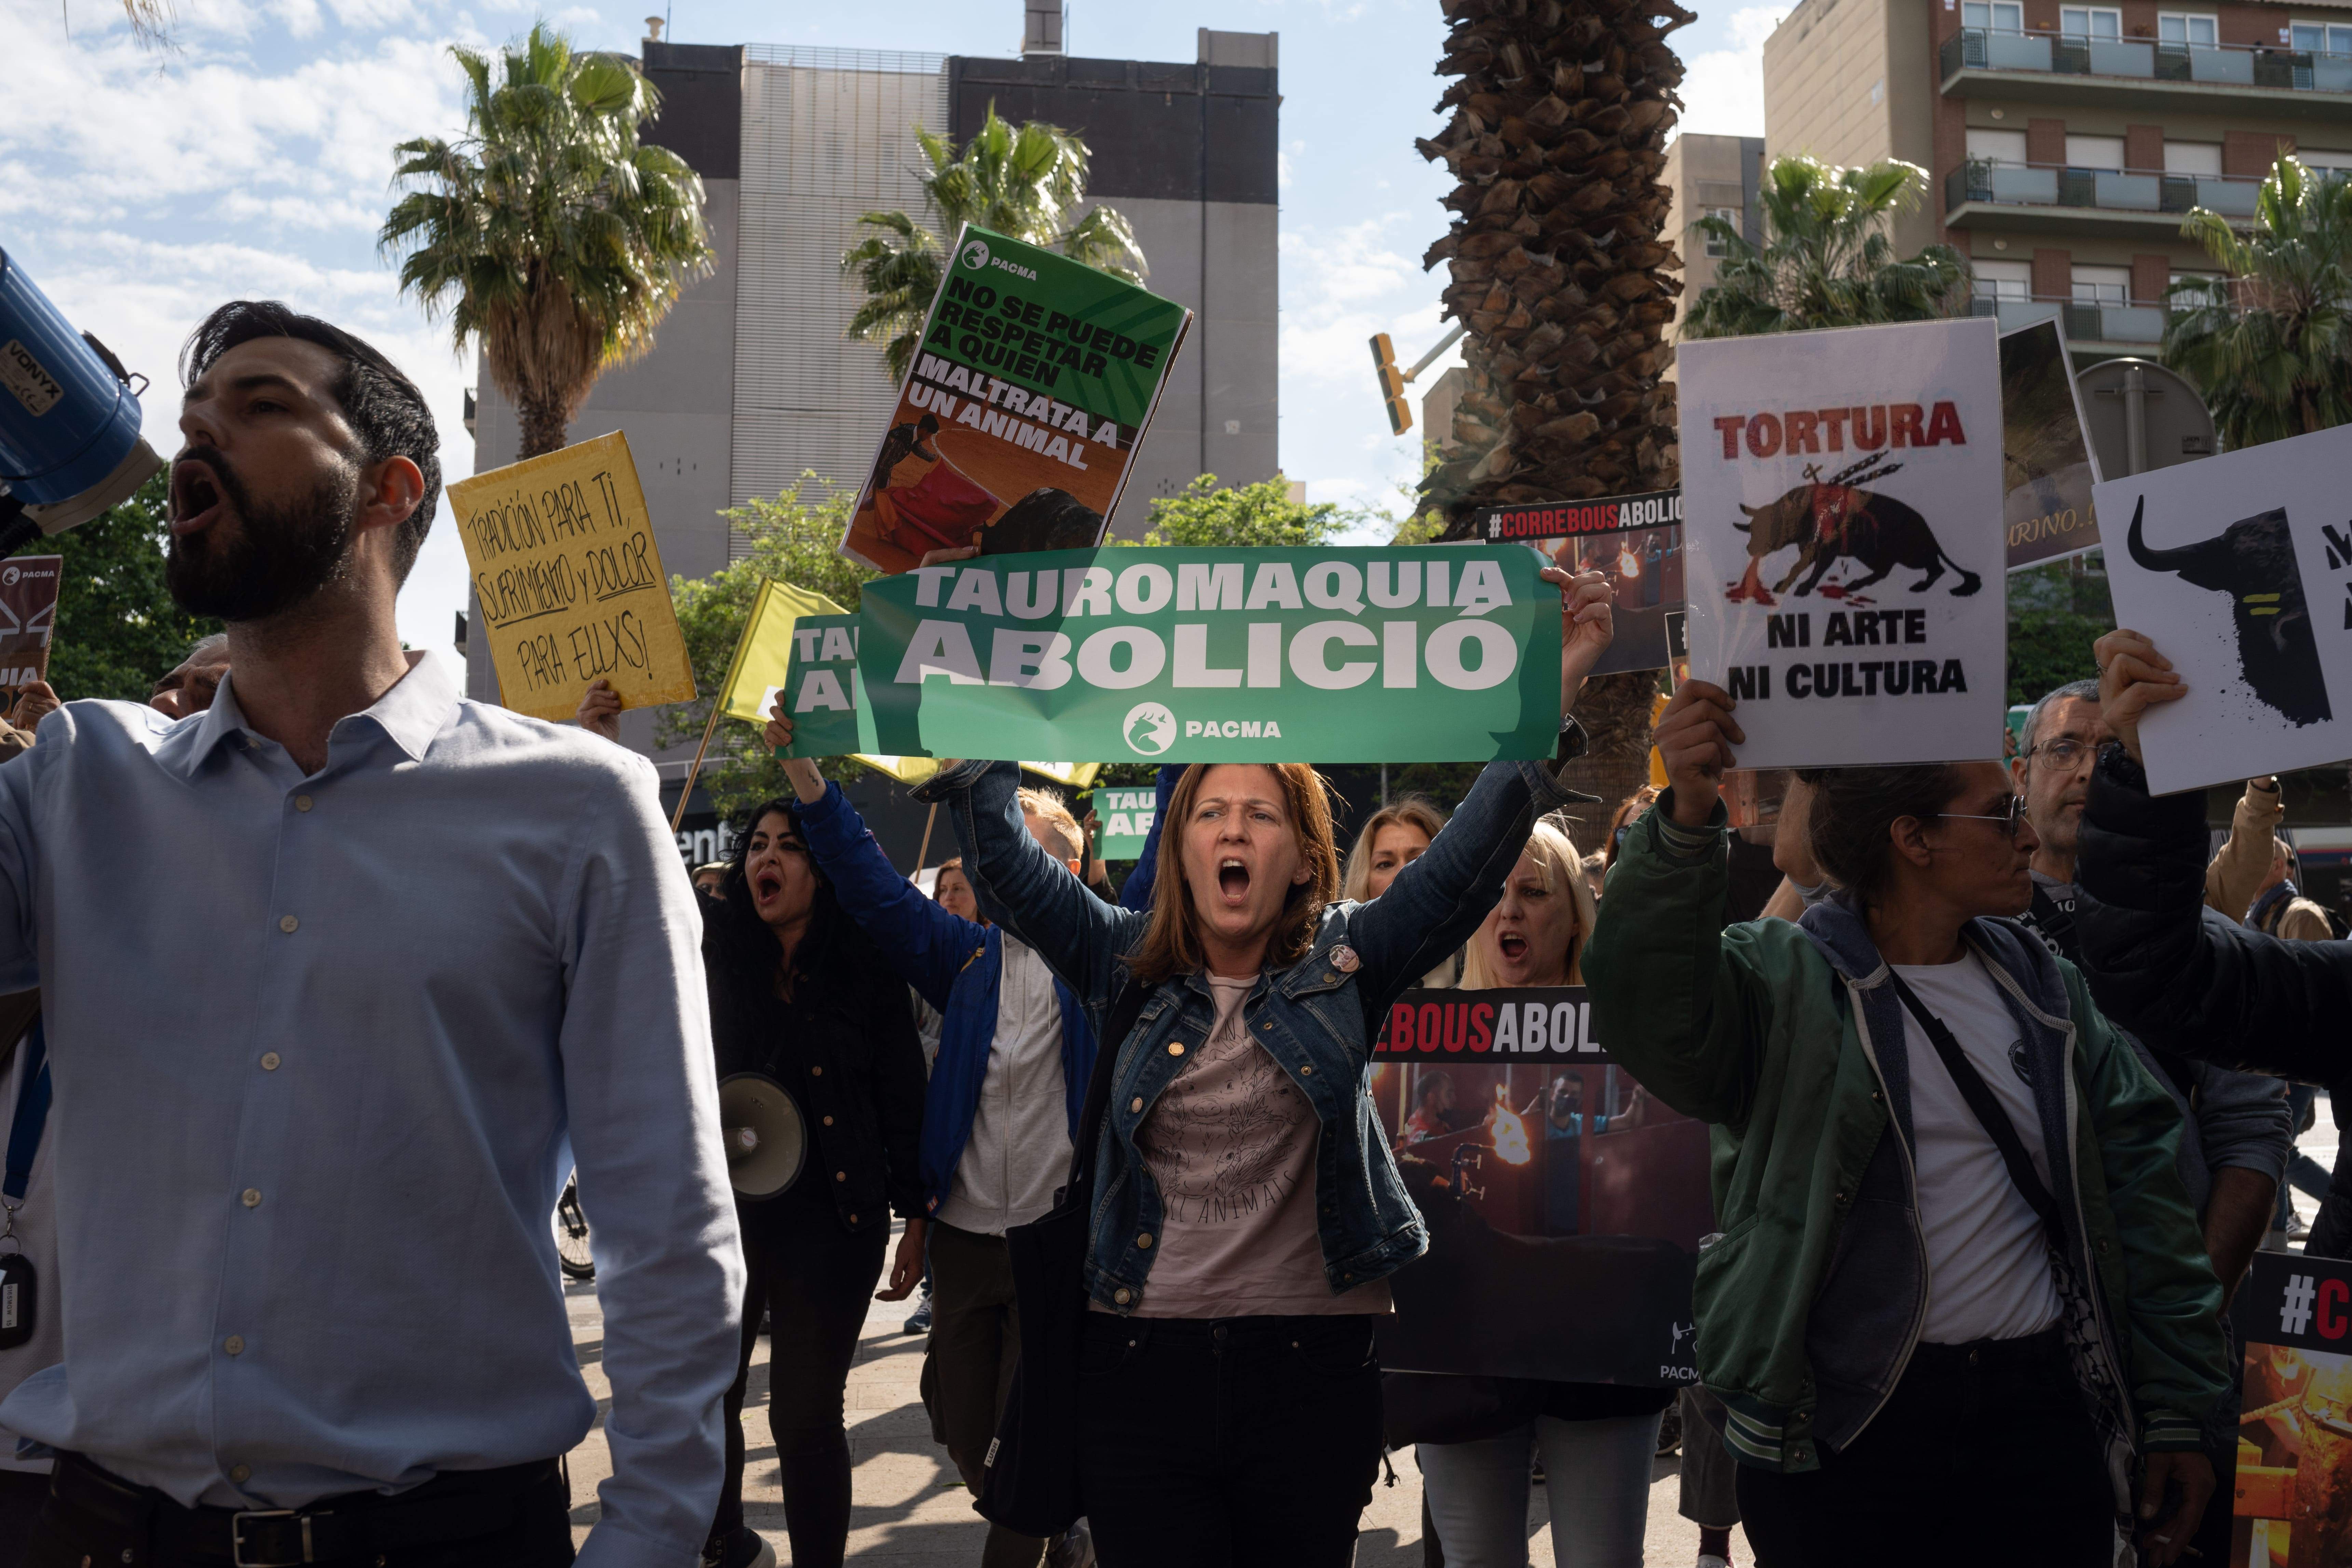 Animalistas protestan en La Monumental contra la polémica fiesta taurina